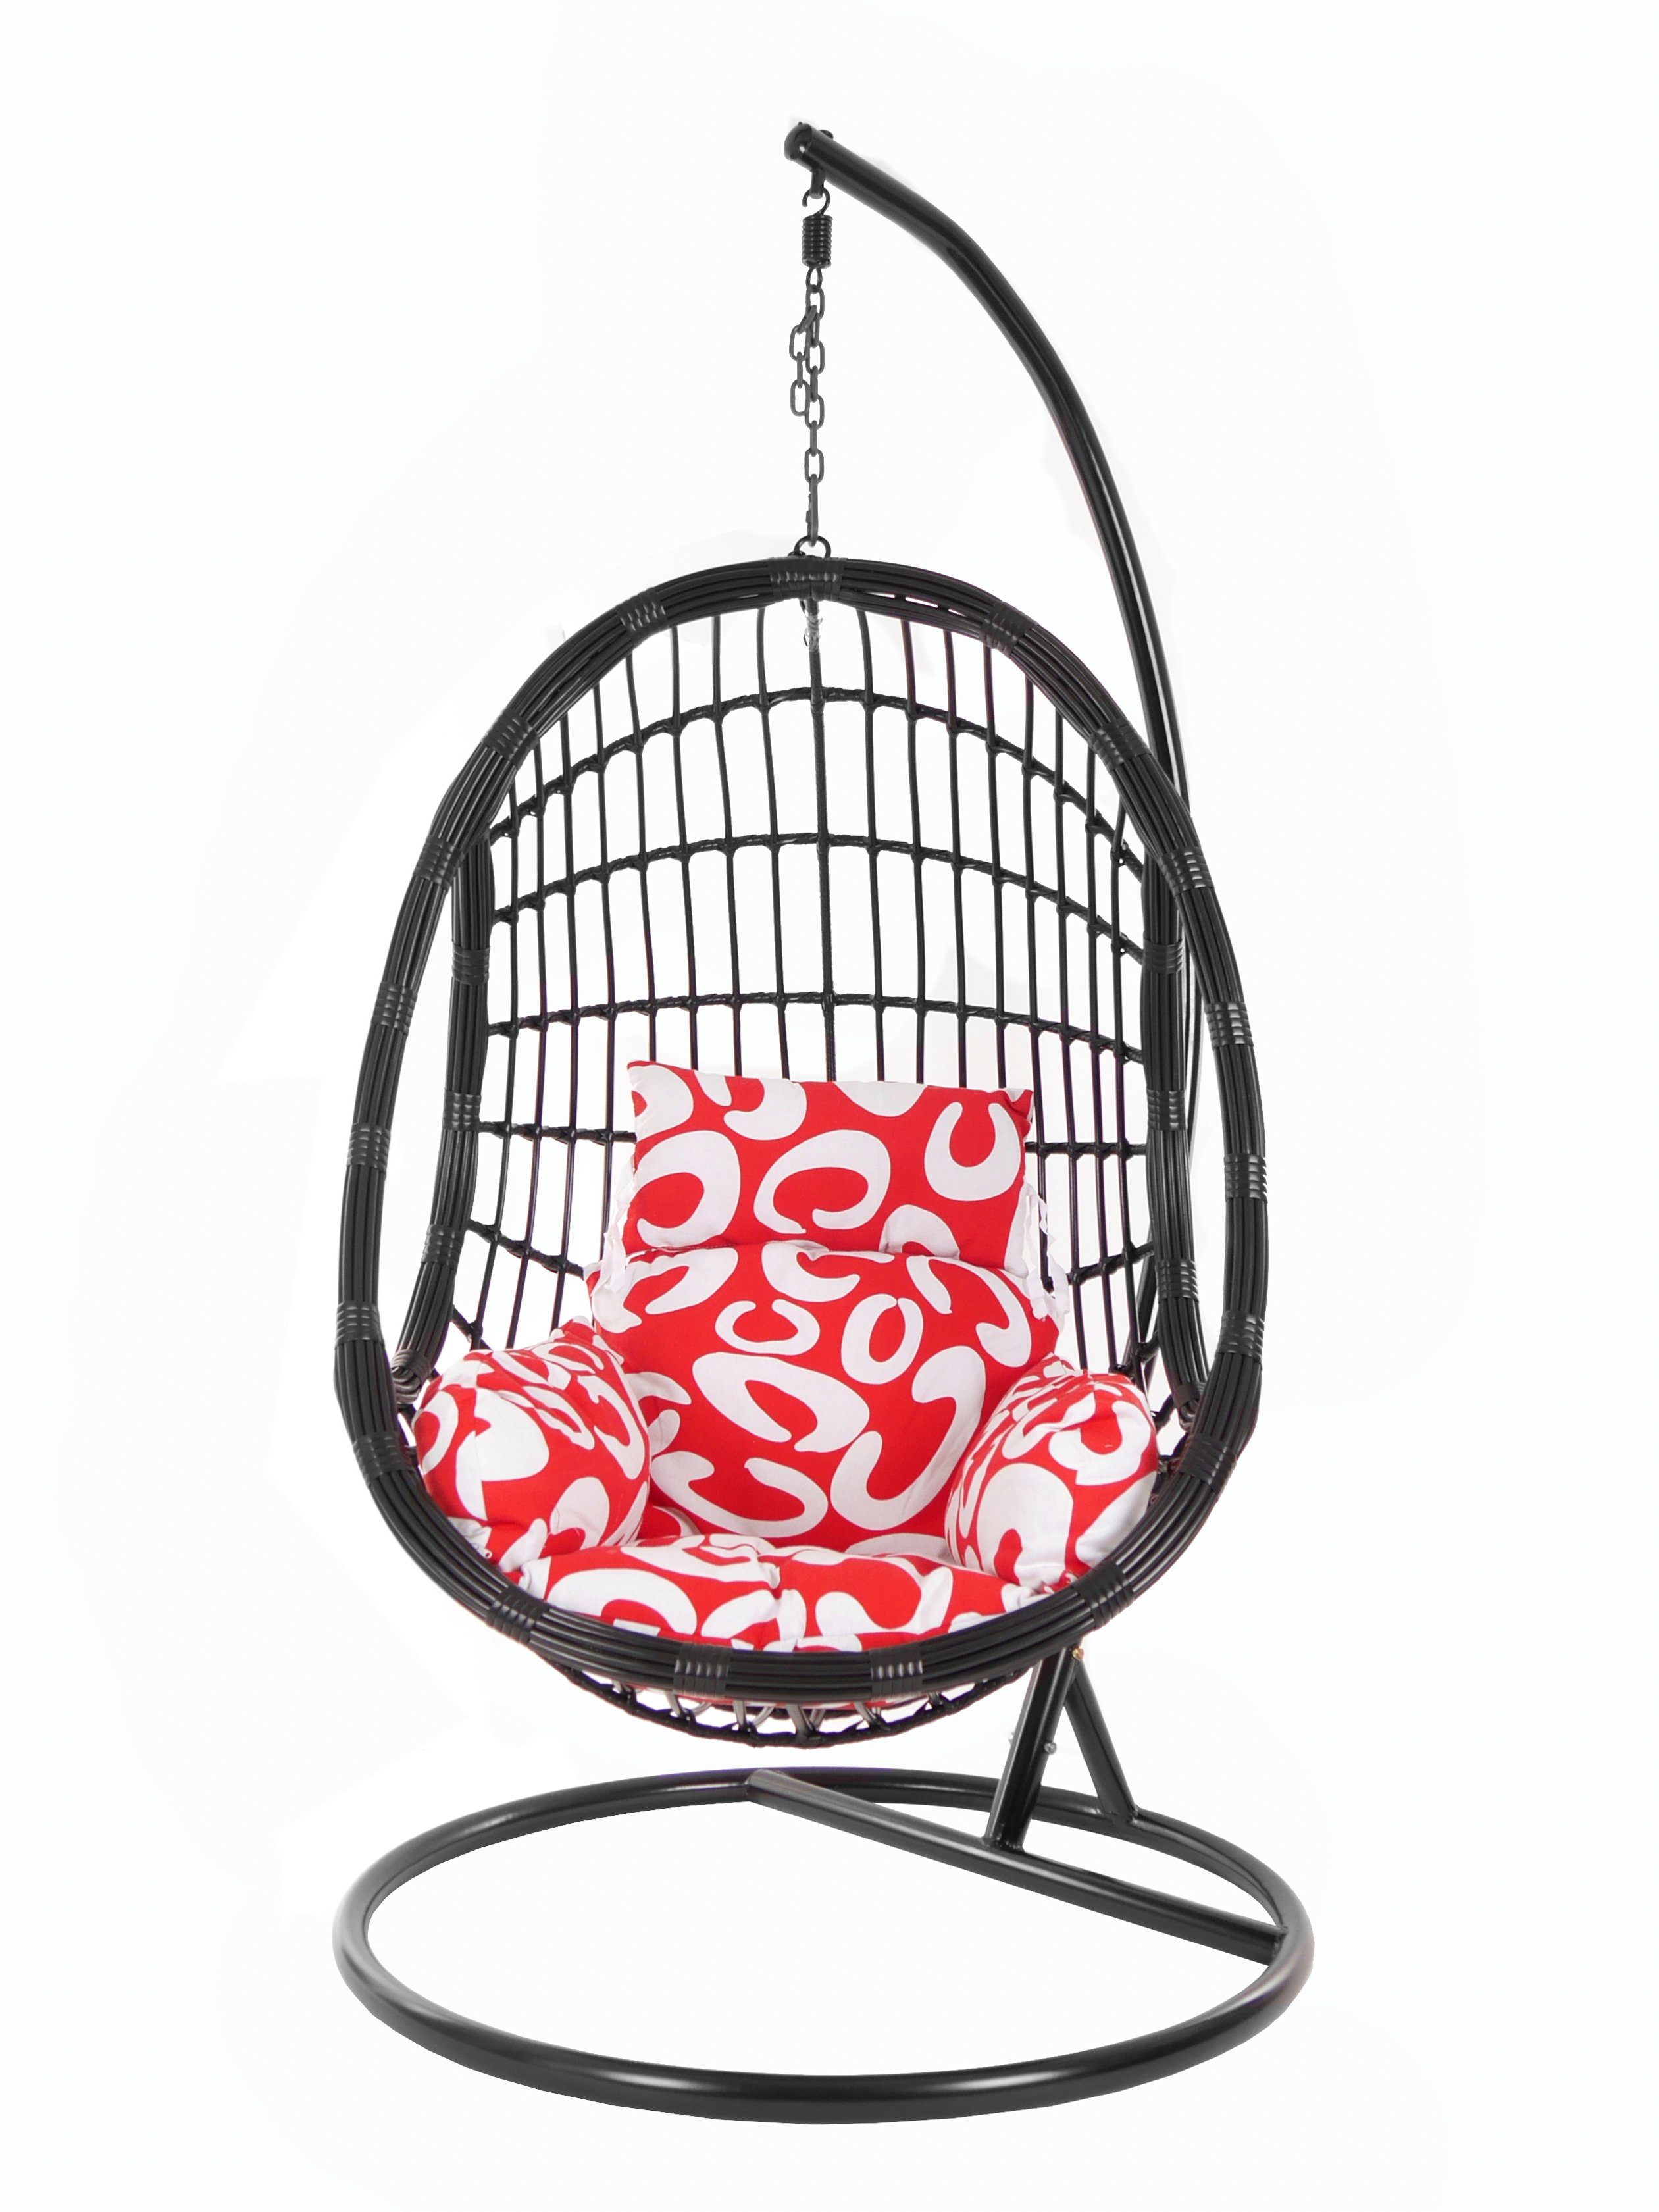 KIDEO Hängesessel PALMANOVA Gestell Chair, Schwarz, Kissen, mit black, Muster Swing (3012 curly) Schwebesessel, und gemustert Loungemöbel, Hängesessel